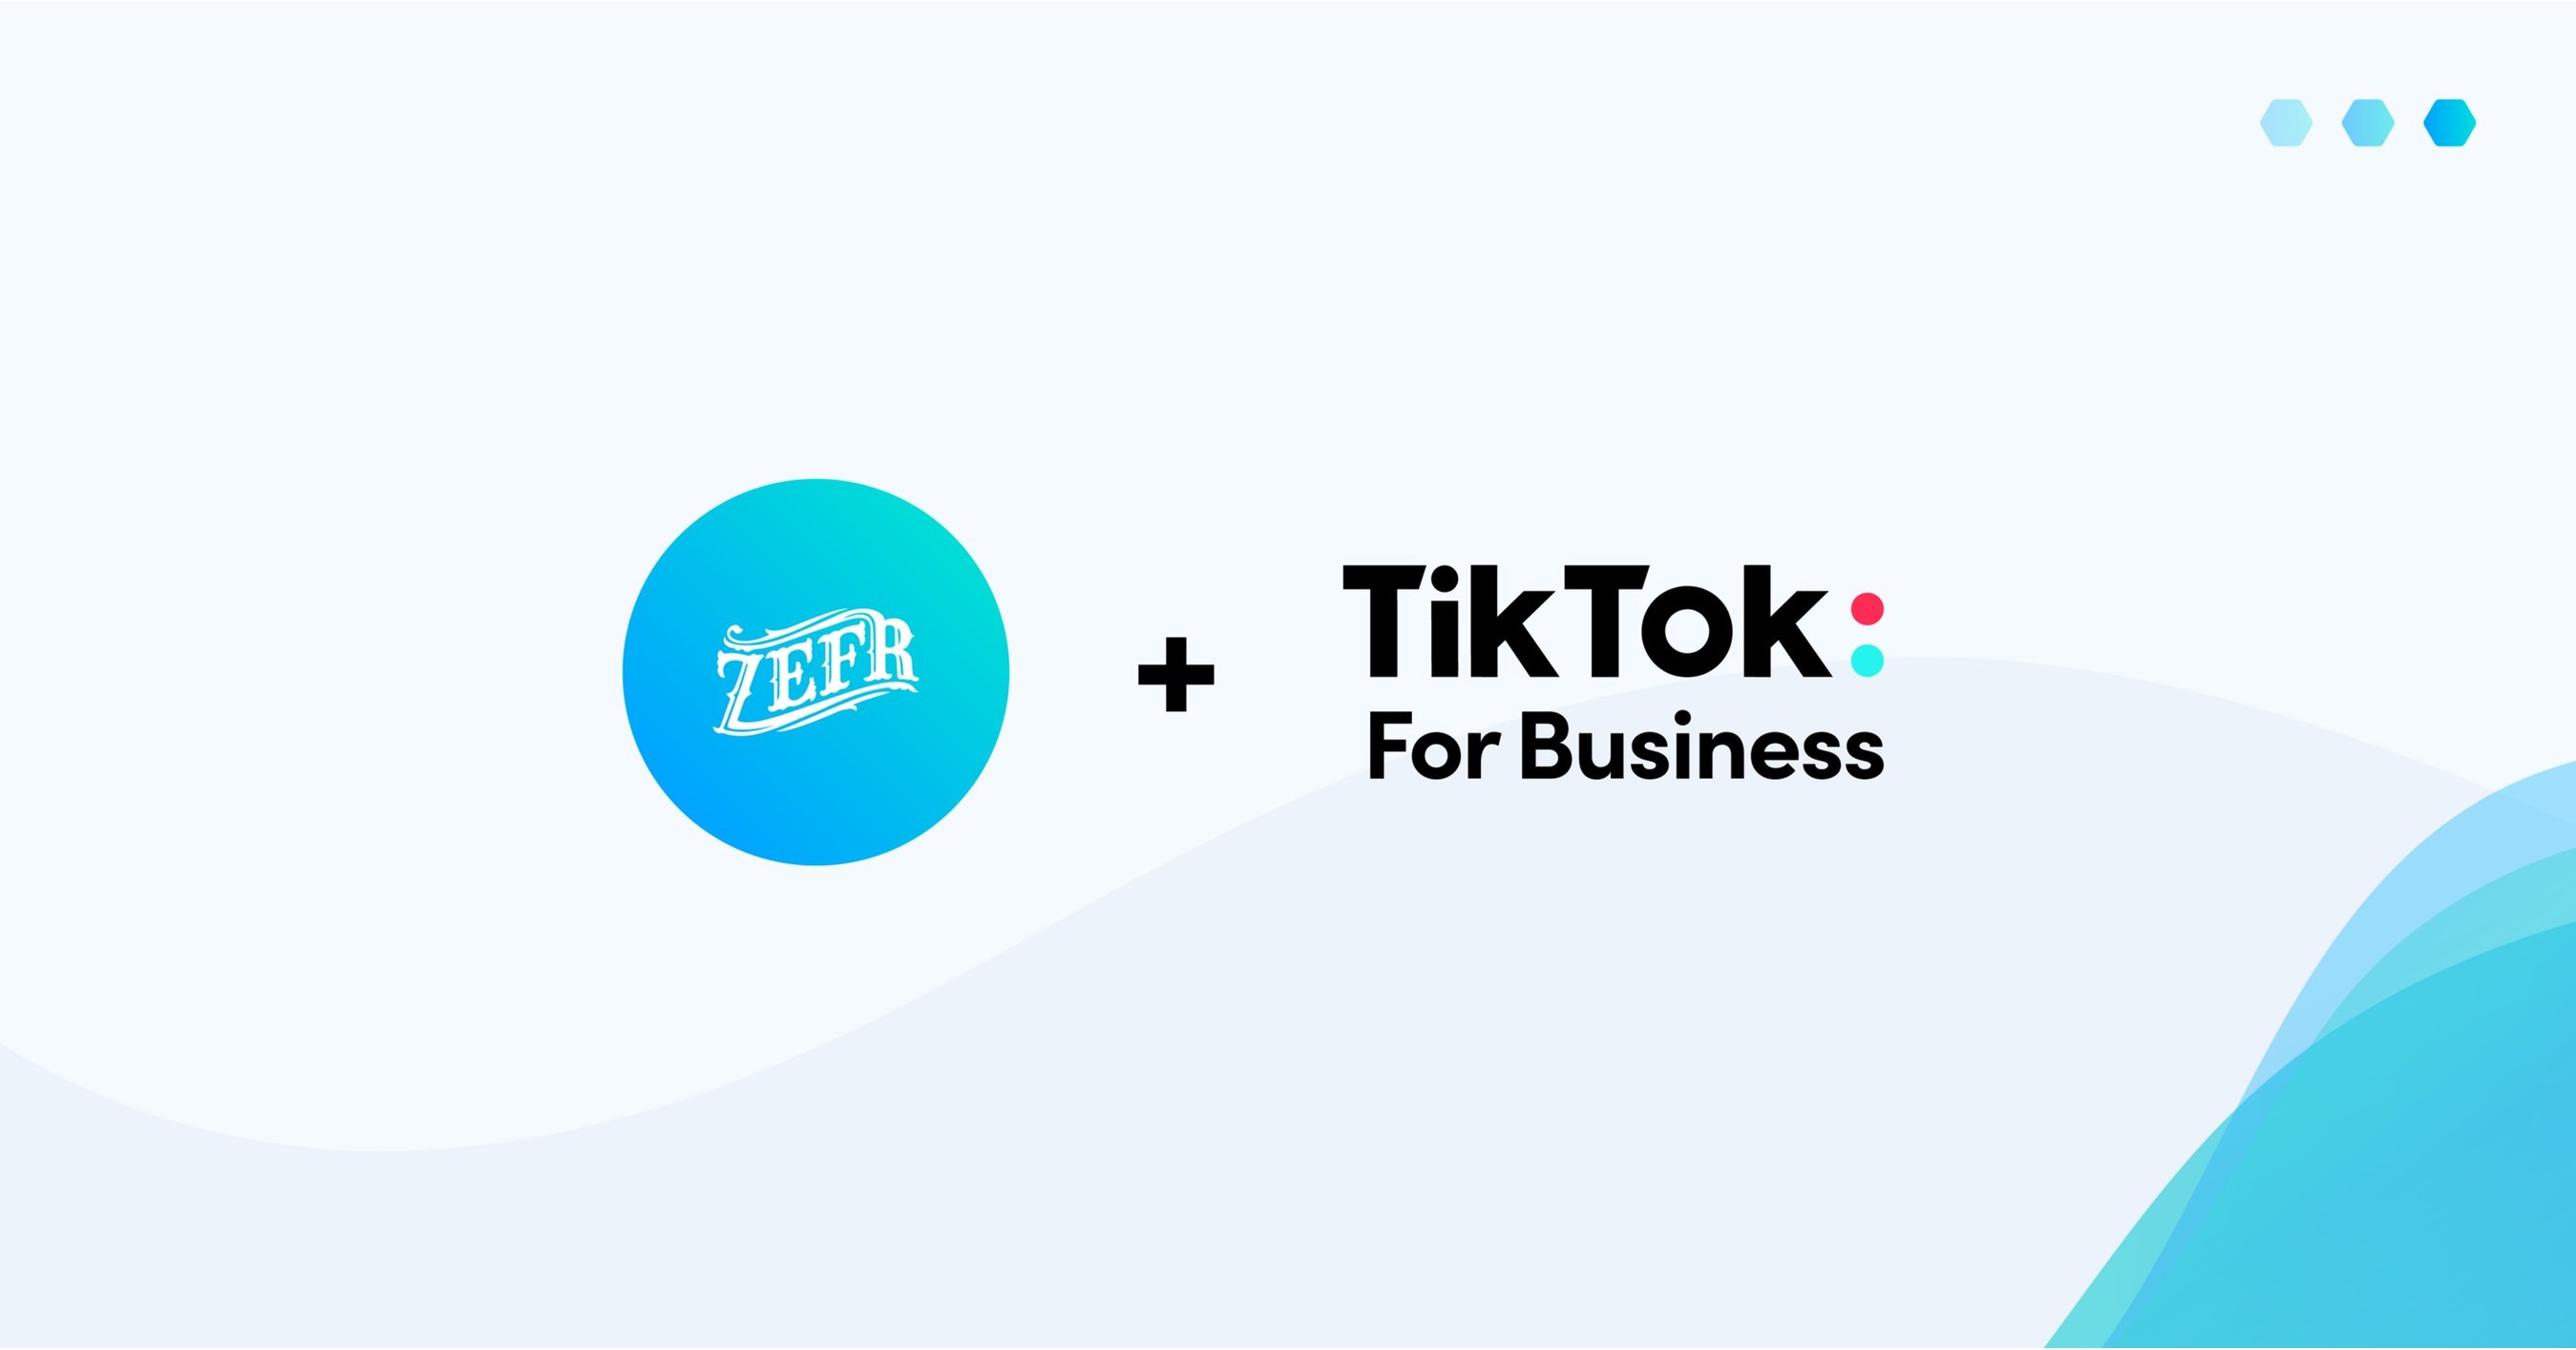 Safer brand vs zevo｜TikTok Search